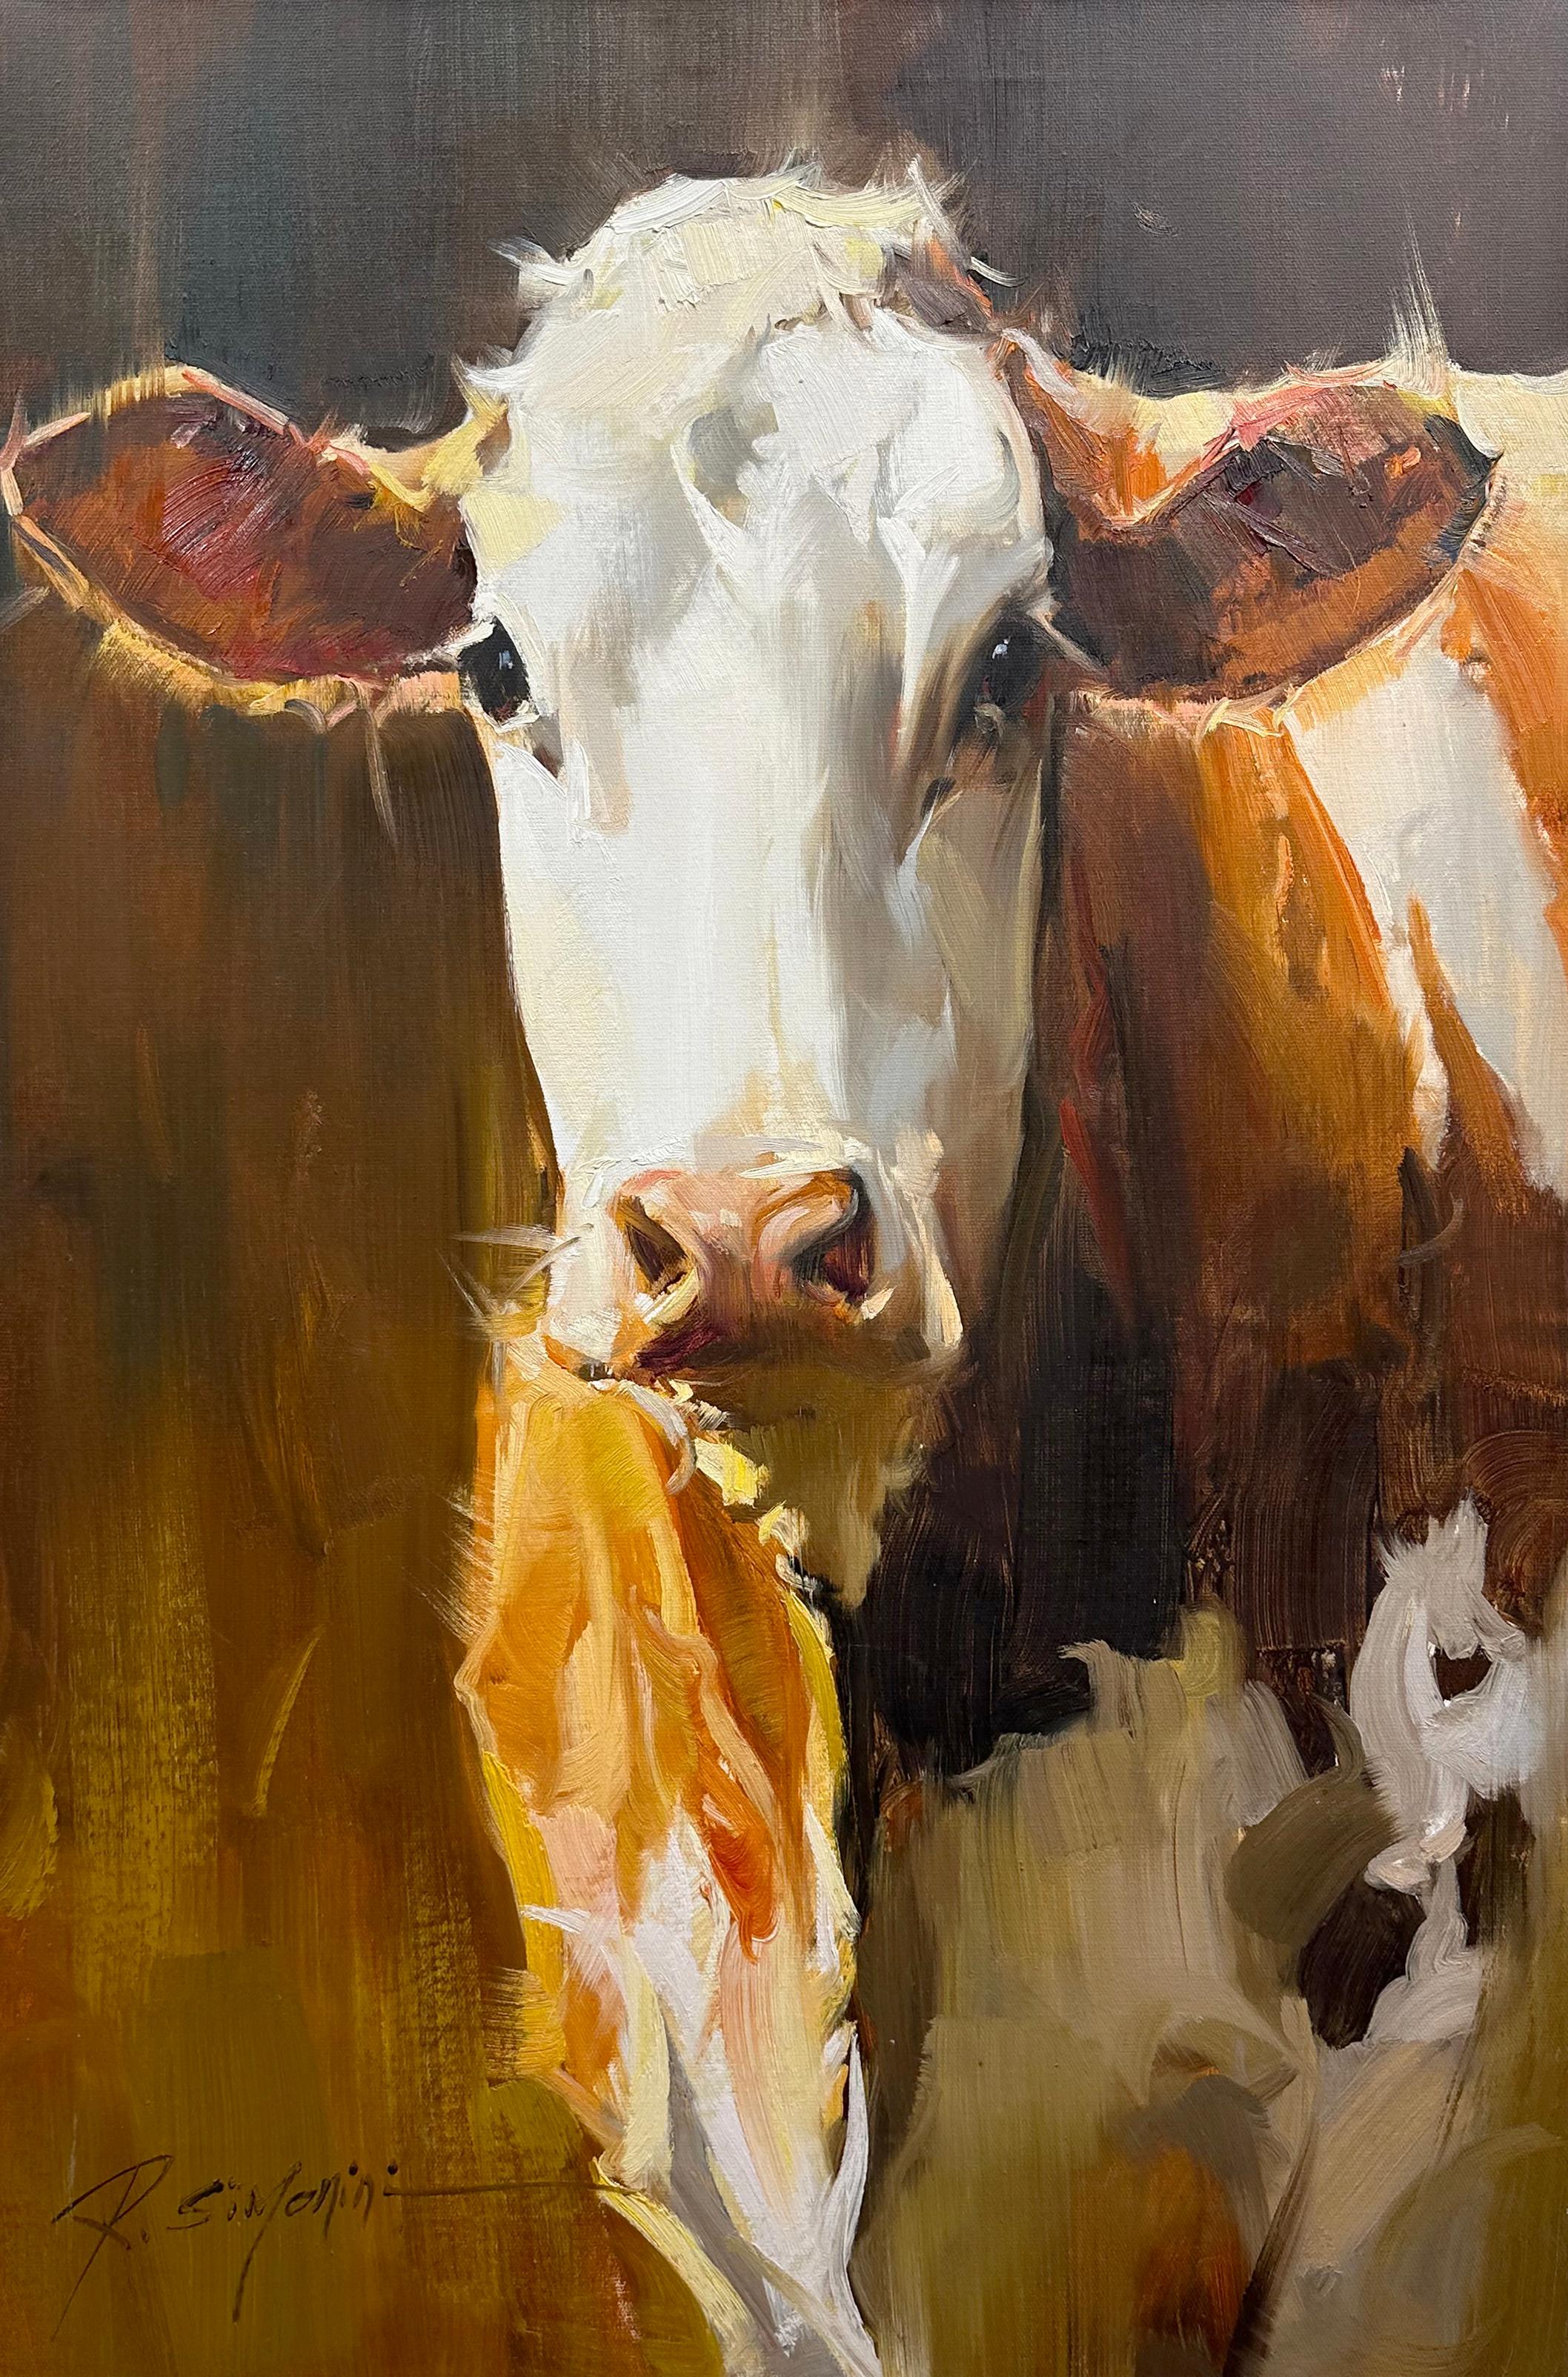 Dieses Gemälde des Künstlers Ray Simonini mit dem Titel "Savannah" ist ein 36x24 Bauernhoftier-Ölgemälde auf Leinwand mit einem Porträt einer braun-weiß gefleckten Kuh vor einem dunklen Hintergrund. 

Über den Künstler:
SIMONINI wurde 1981 in China